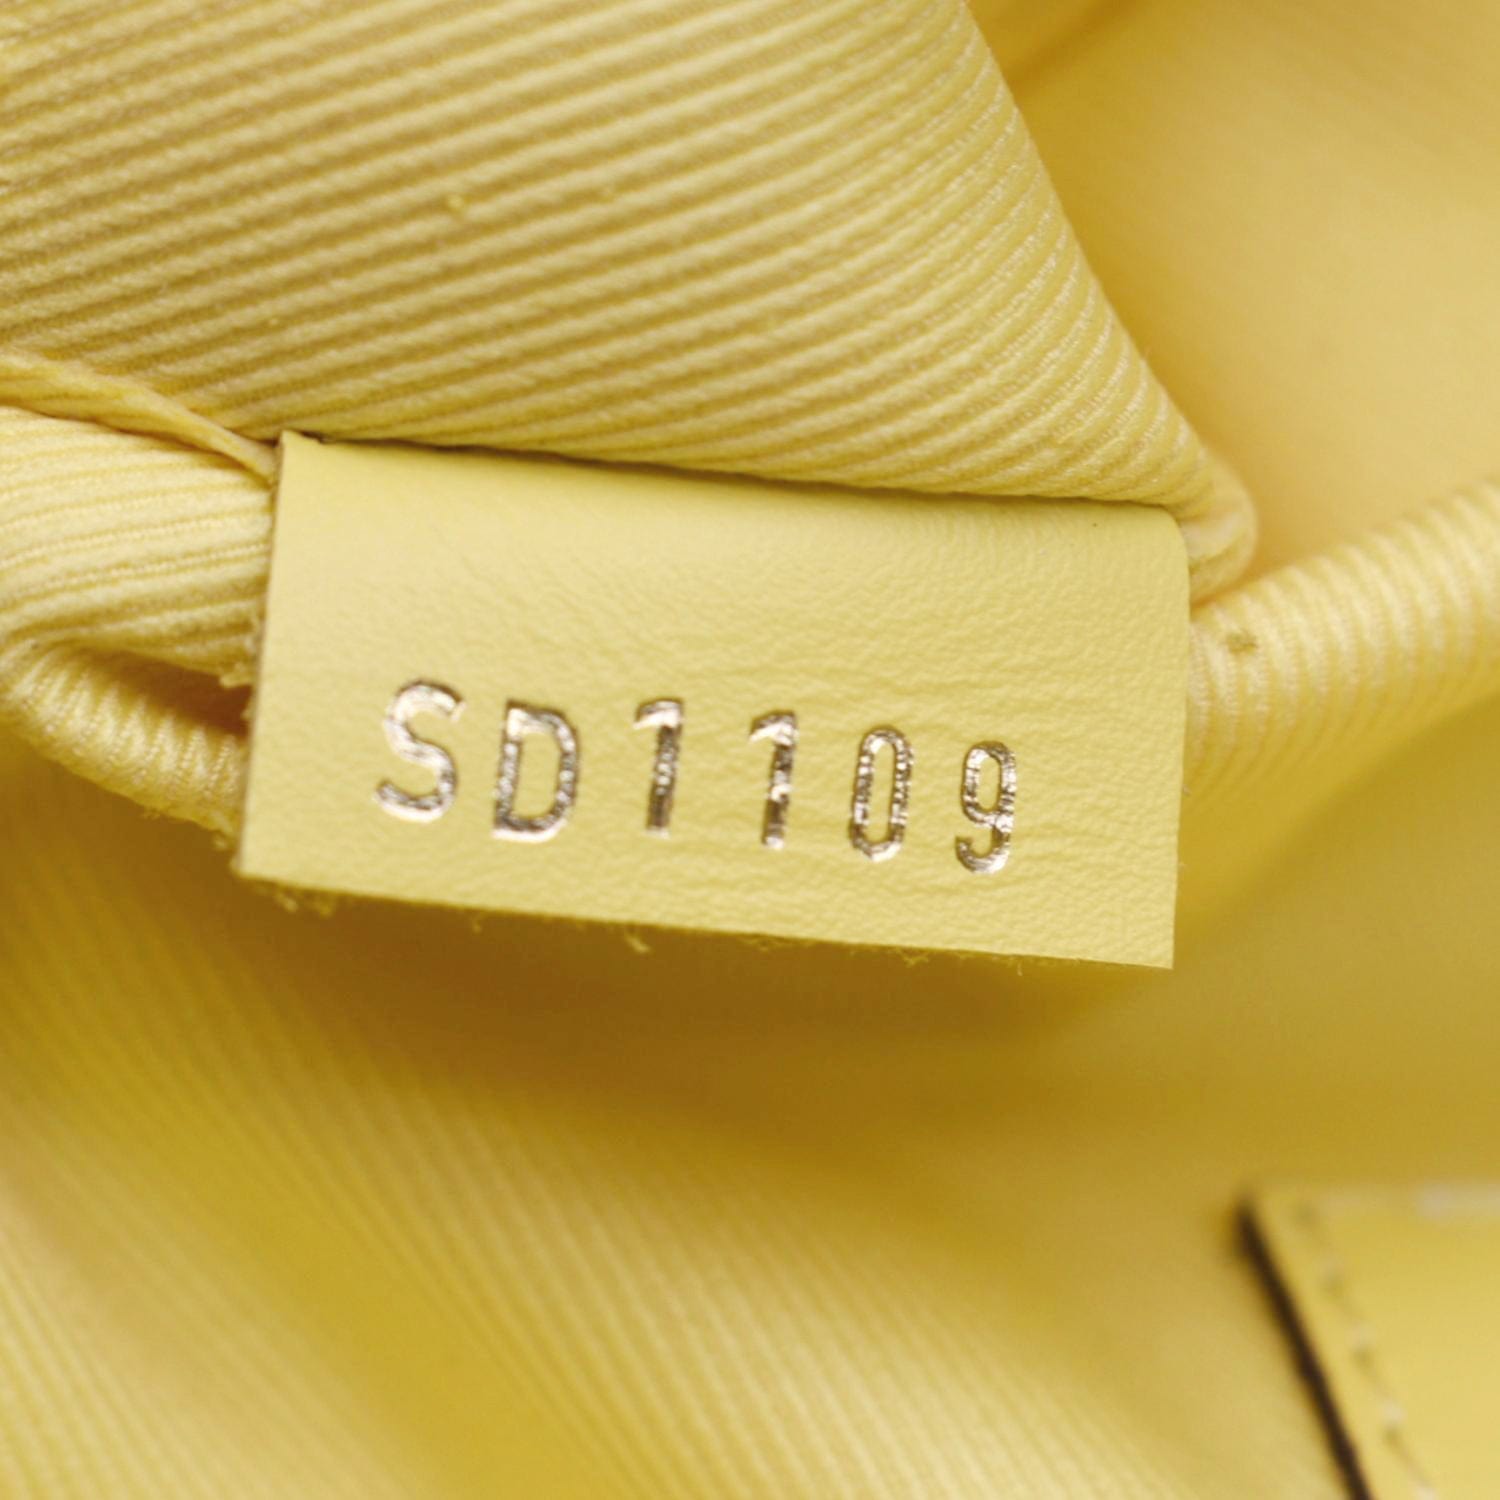 Louis Vuitton Saintonge Shoulder bag 402818